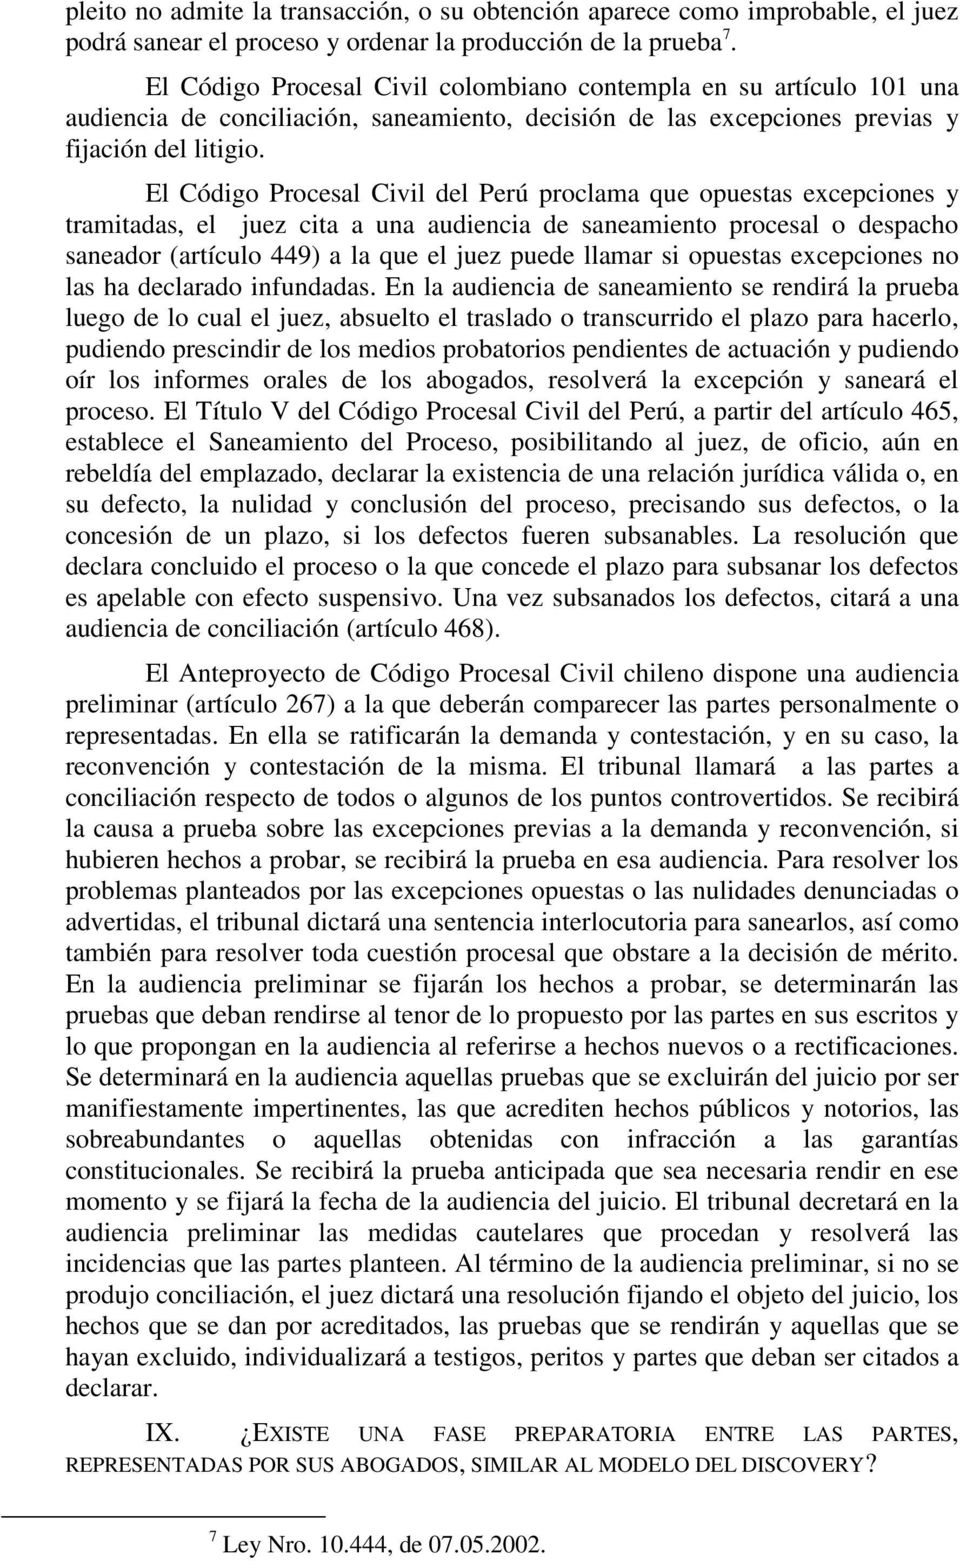 El Código Procesal Civil del Perú proclama que opuestas excepciones y tramitadas, el juez cita a una audiencia de saneamiento procesal o despacho saneador (artículo 449) a la que el juez puede llamar